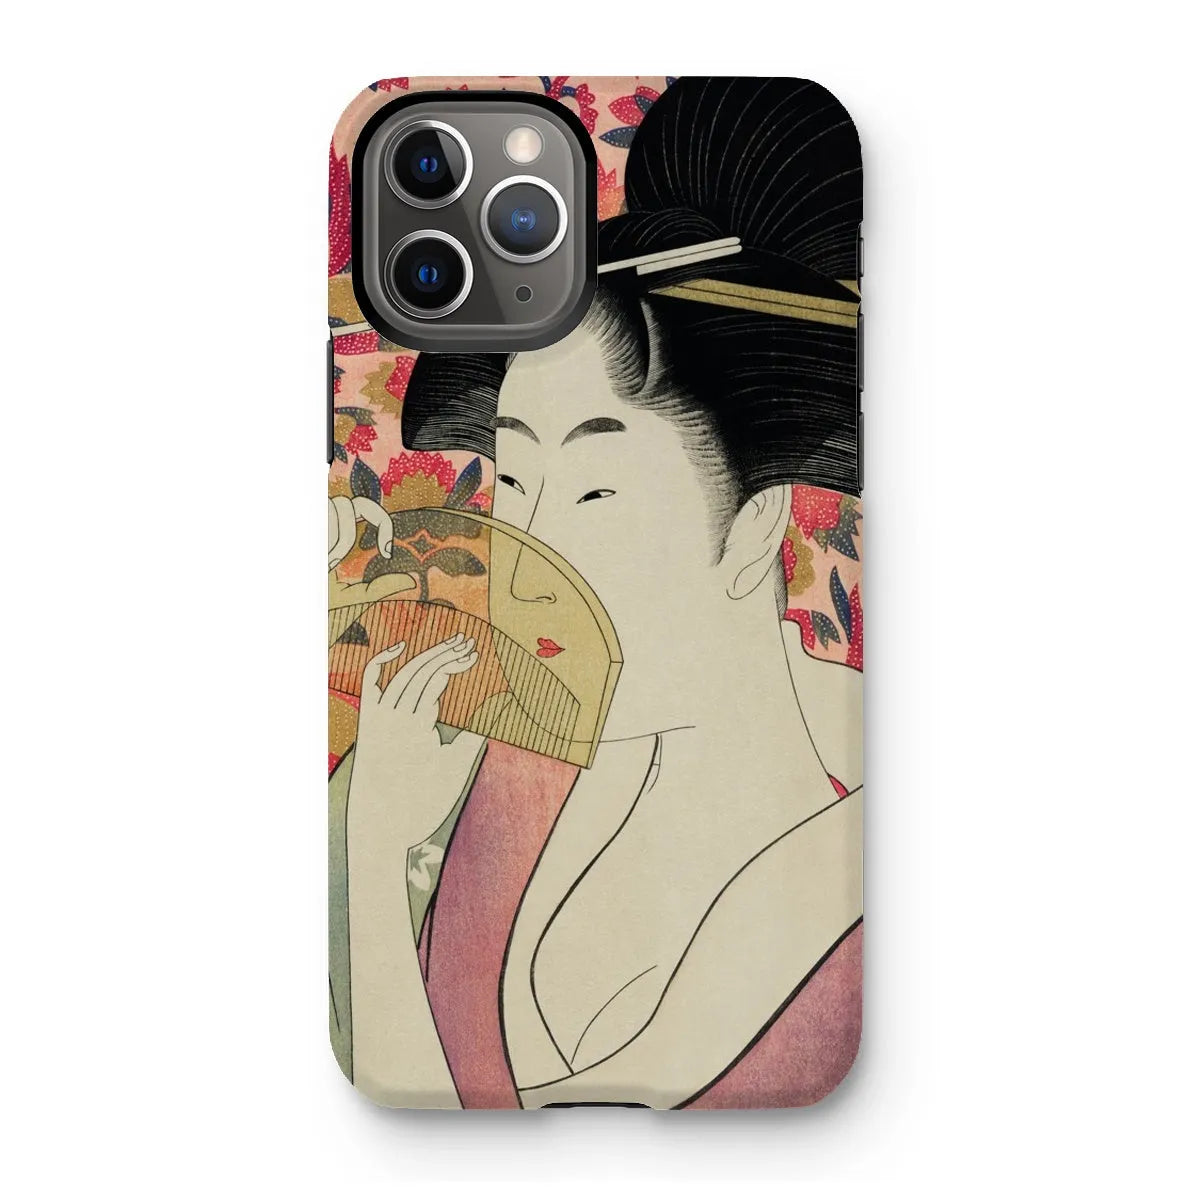 Kushi - Japanese Ukiyo-e Art Phone Case - Utamaro Kitagawa - Iphone 11 Pro / Matte - Mobile Phone Cases - Aesthetic Art